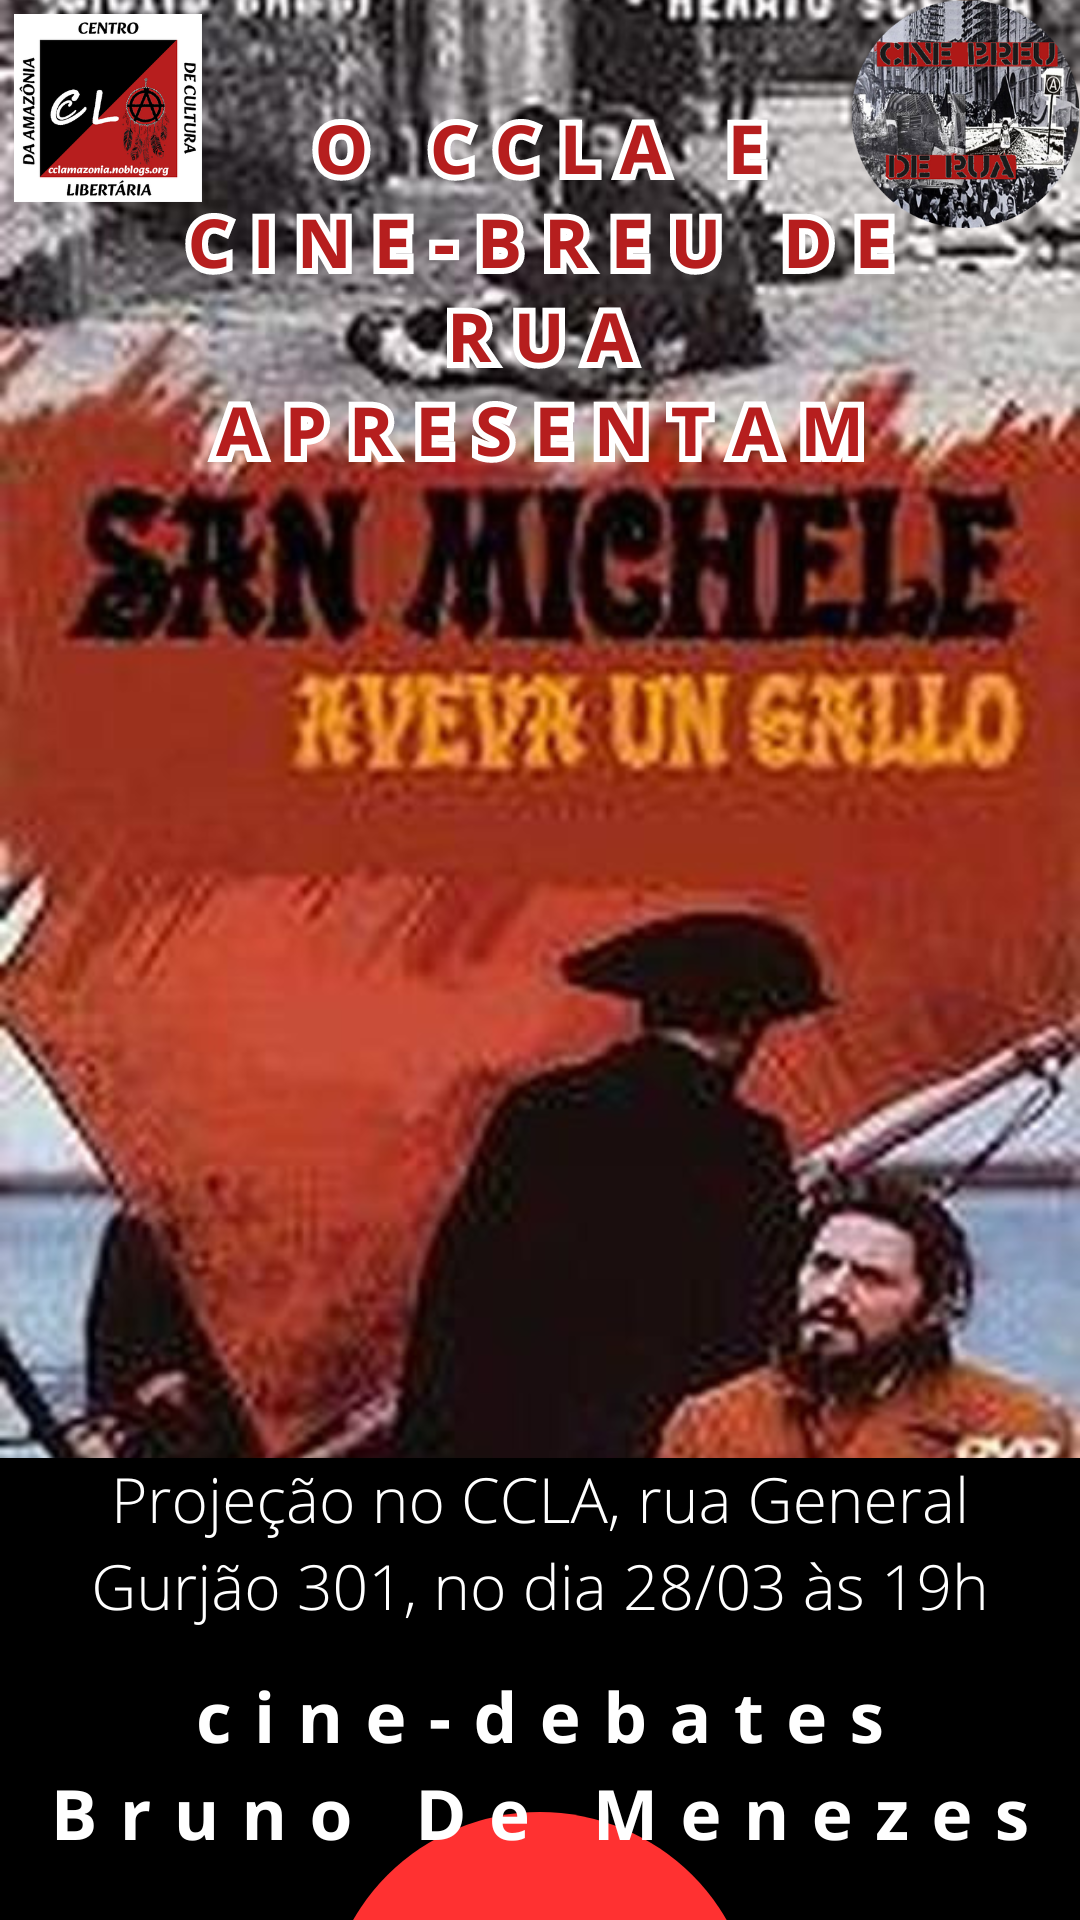 Projeção do filme São Miguel tinha um Galo (Itália, 1972) no cine-debate do CCLA